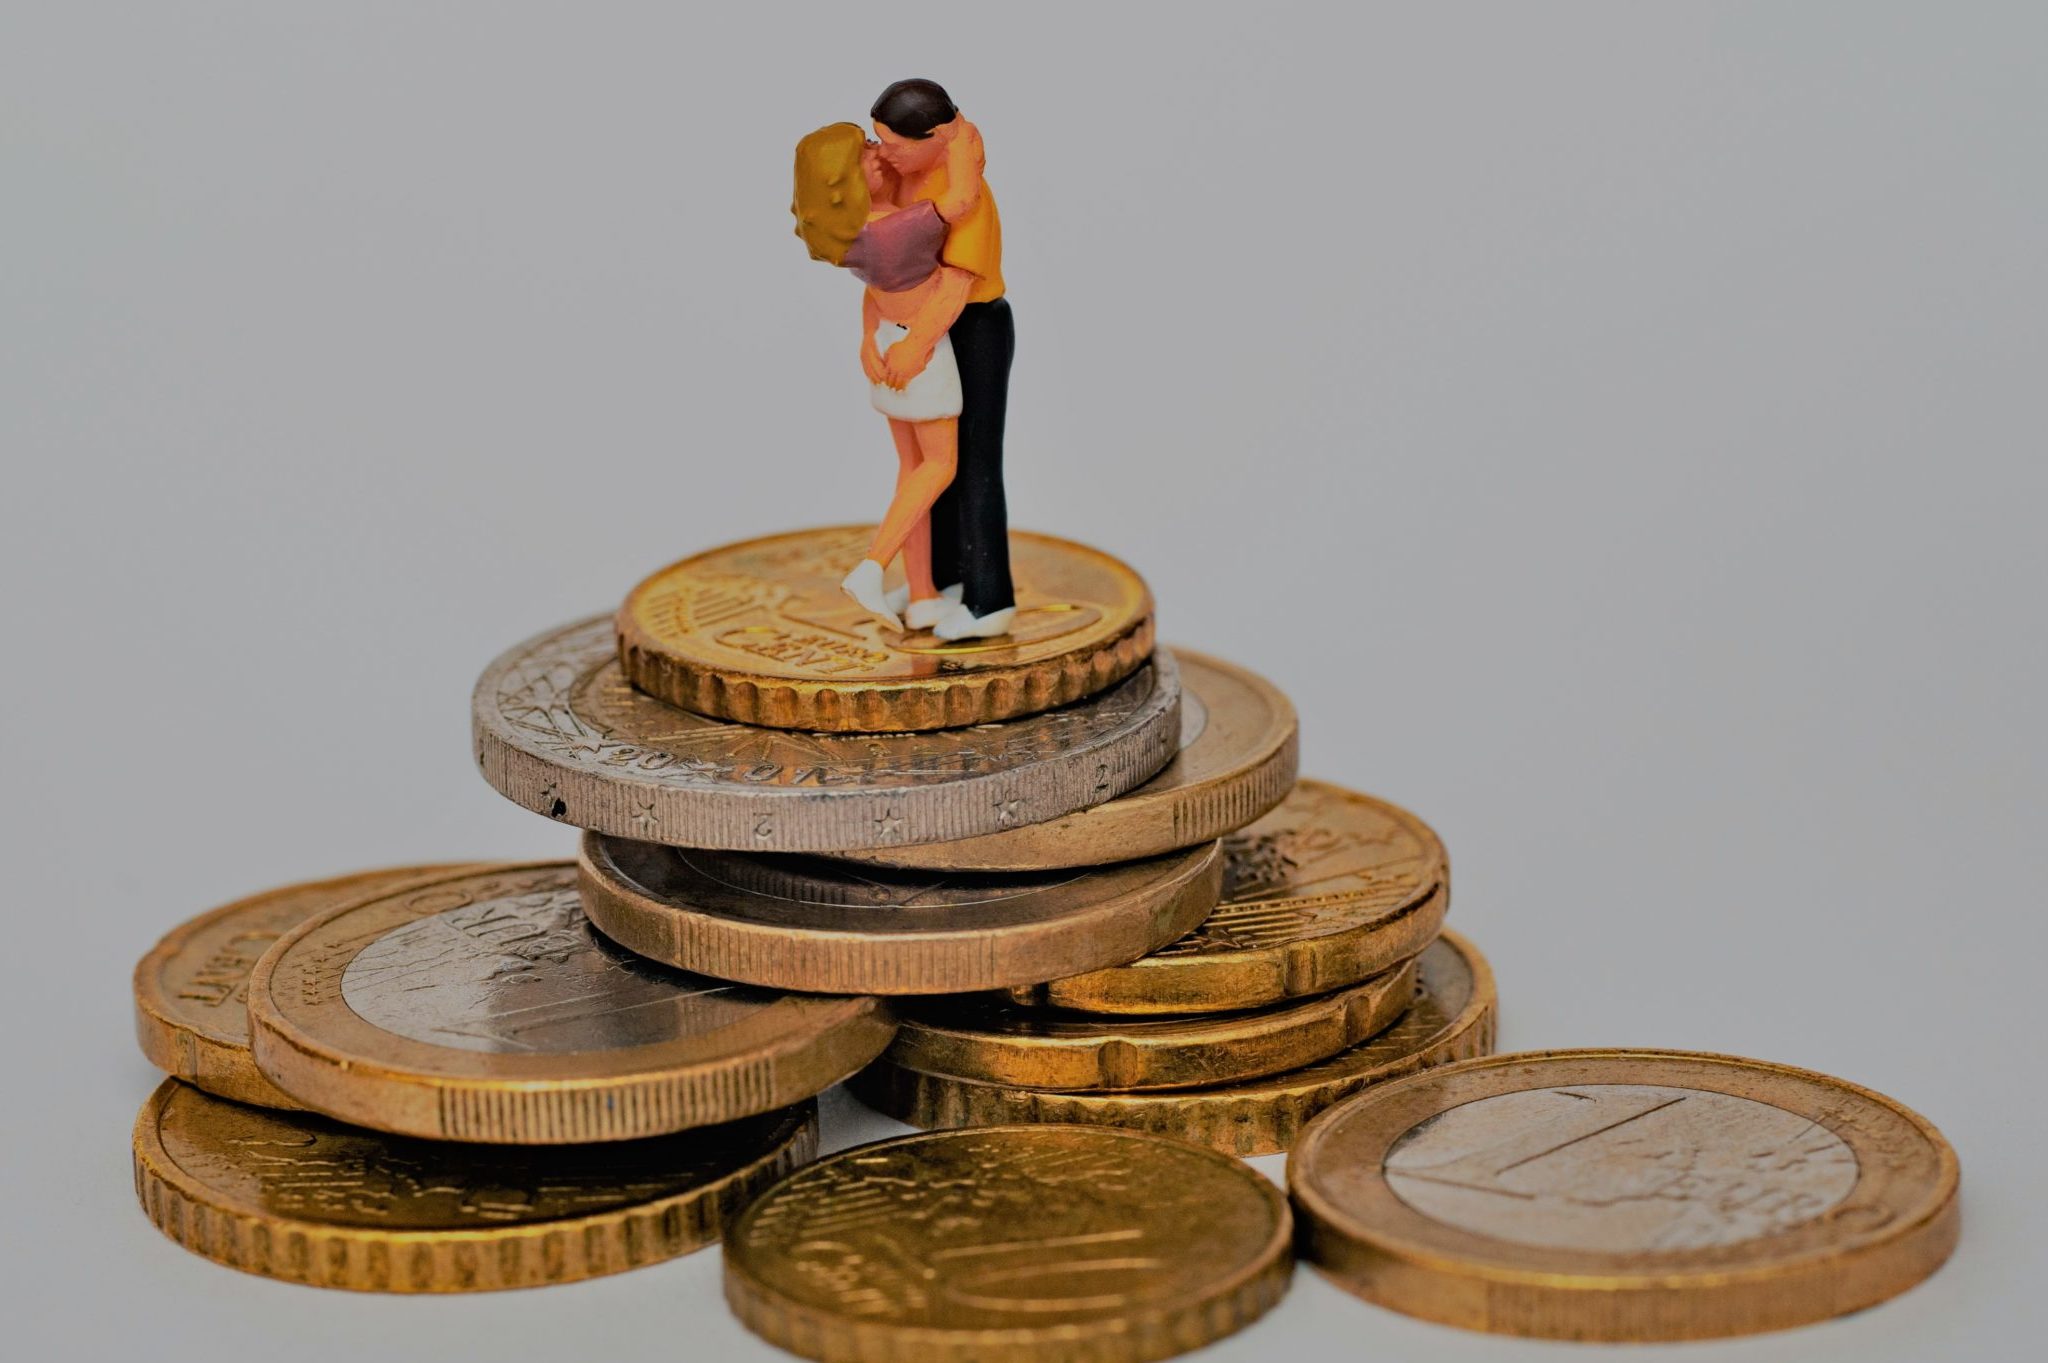 Argent & couple: pourquoi est-ce si difficile de parler d’argent dans son couple?